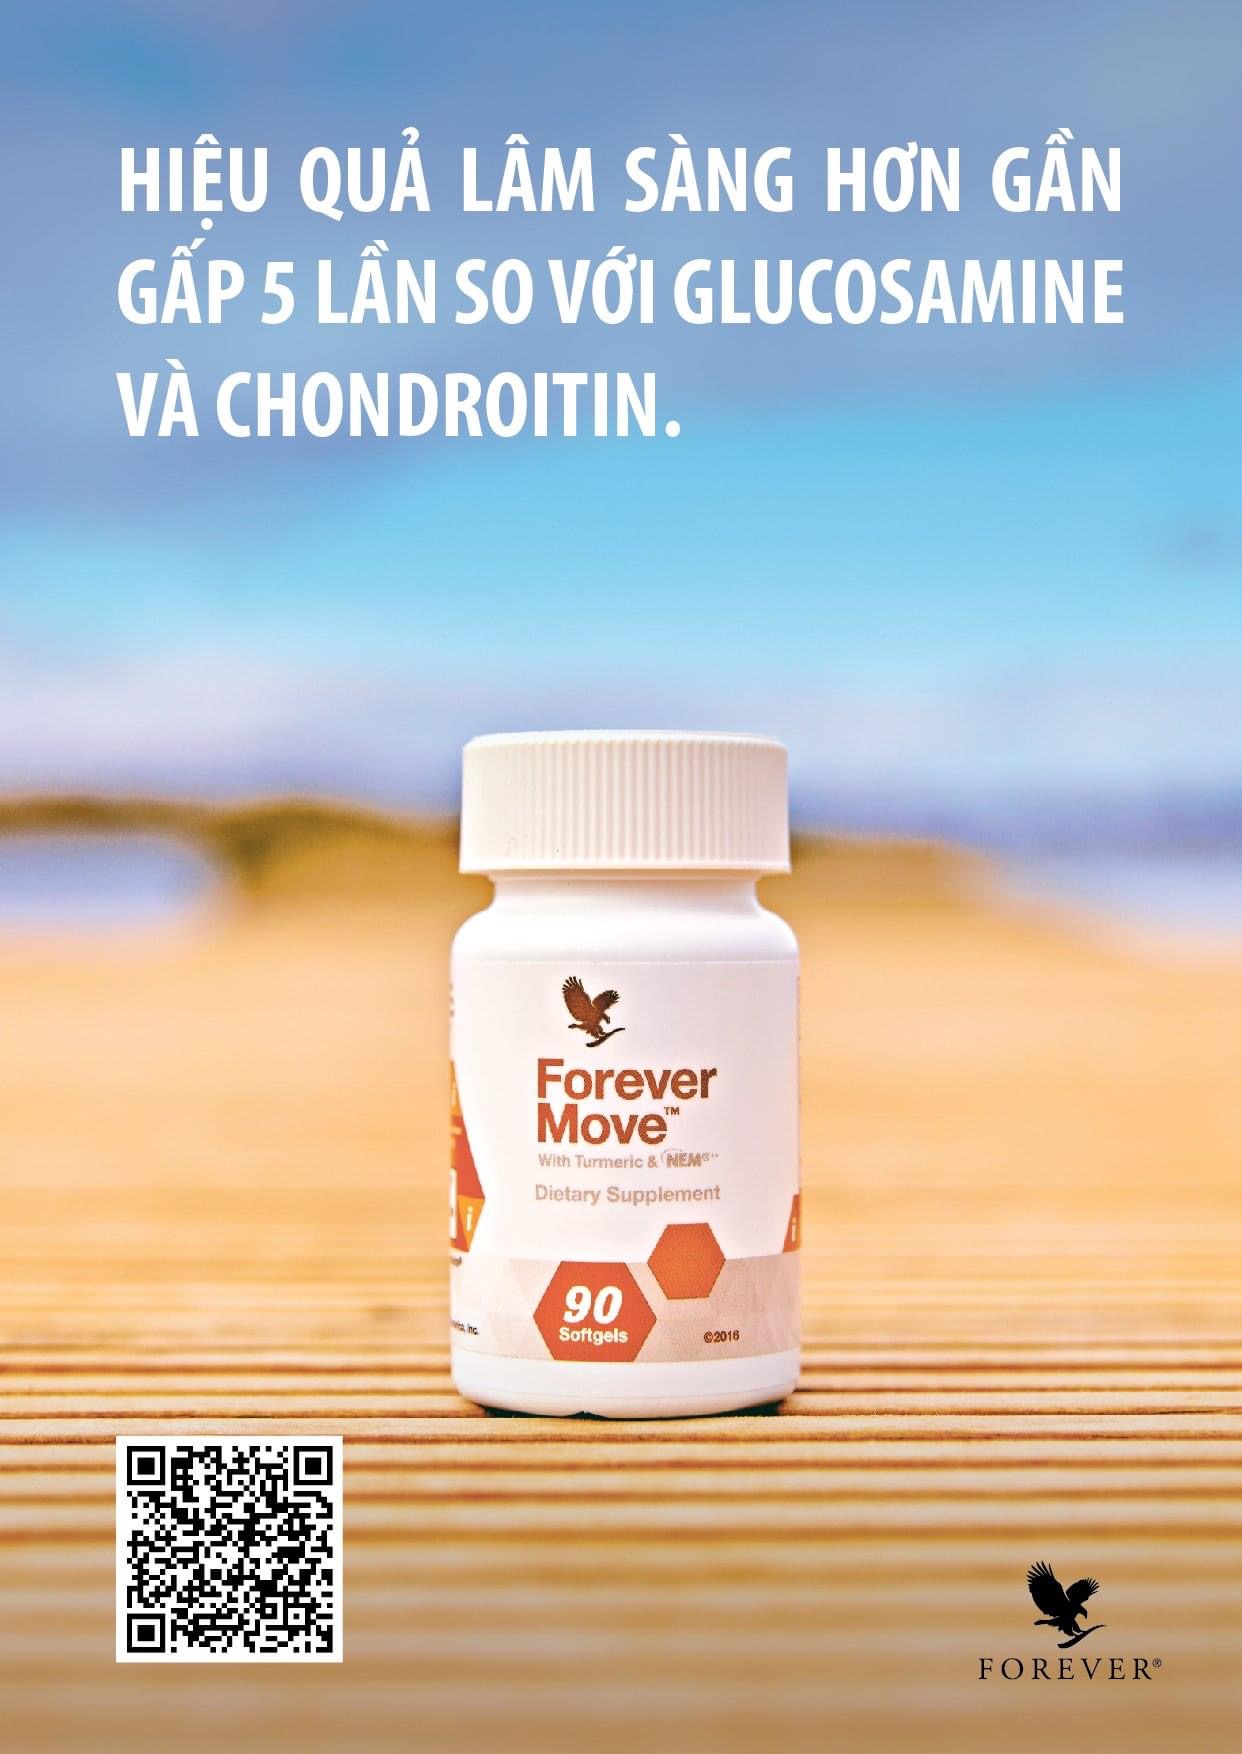 Forever Move (551 Flp) : Hiệu Quả Lâm Sàng Hơn Gần Gấp 5 Lần So Với Glucosamine và Chondroitin.